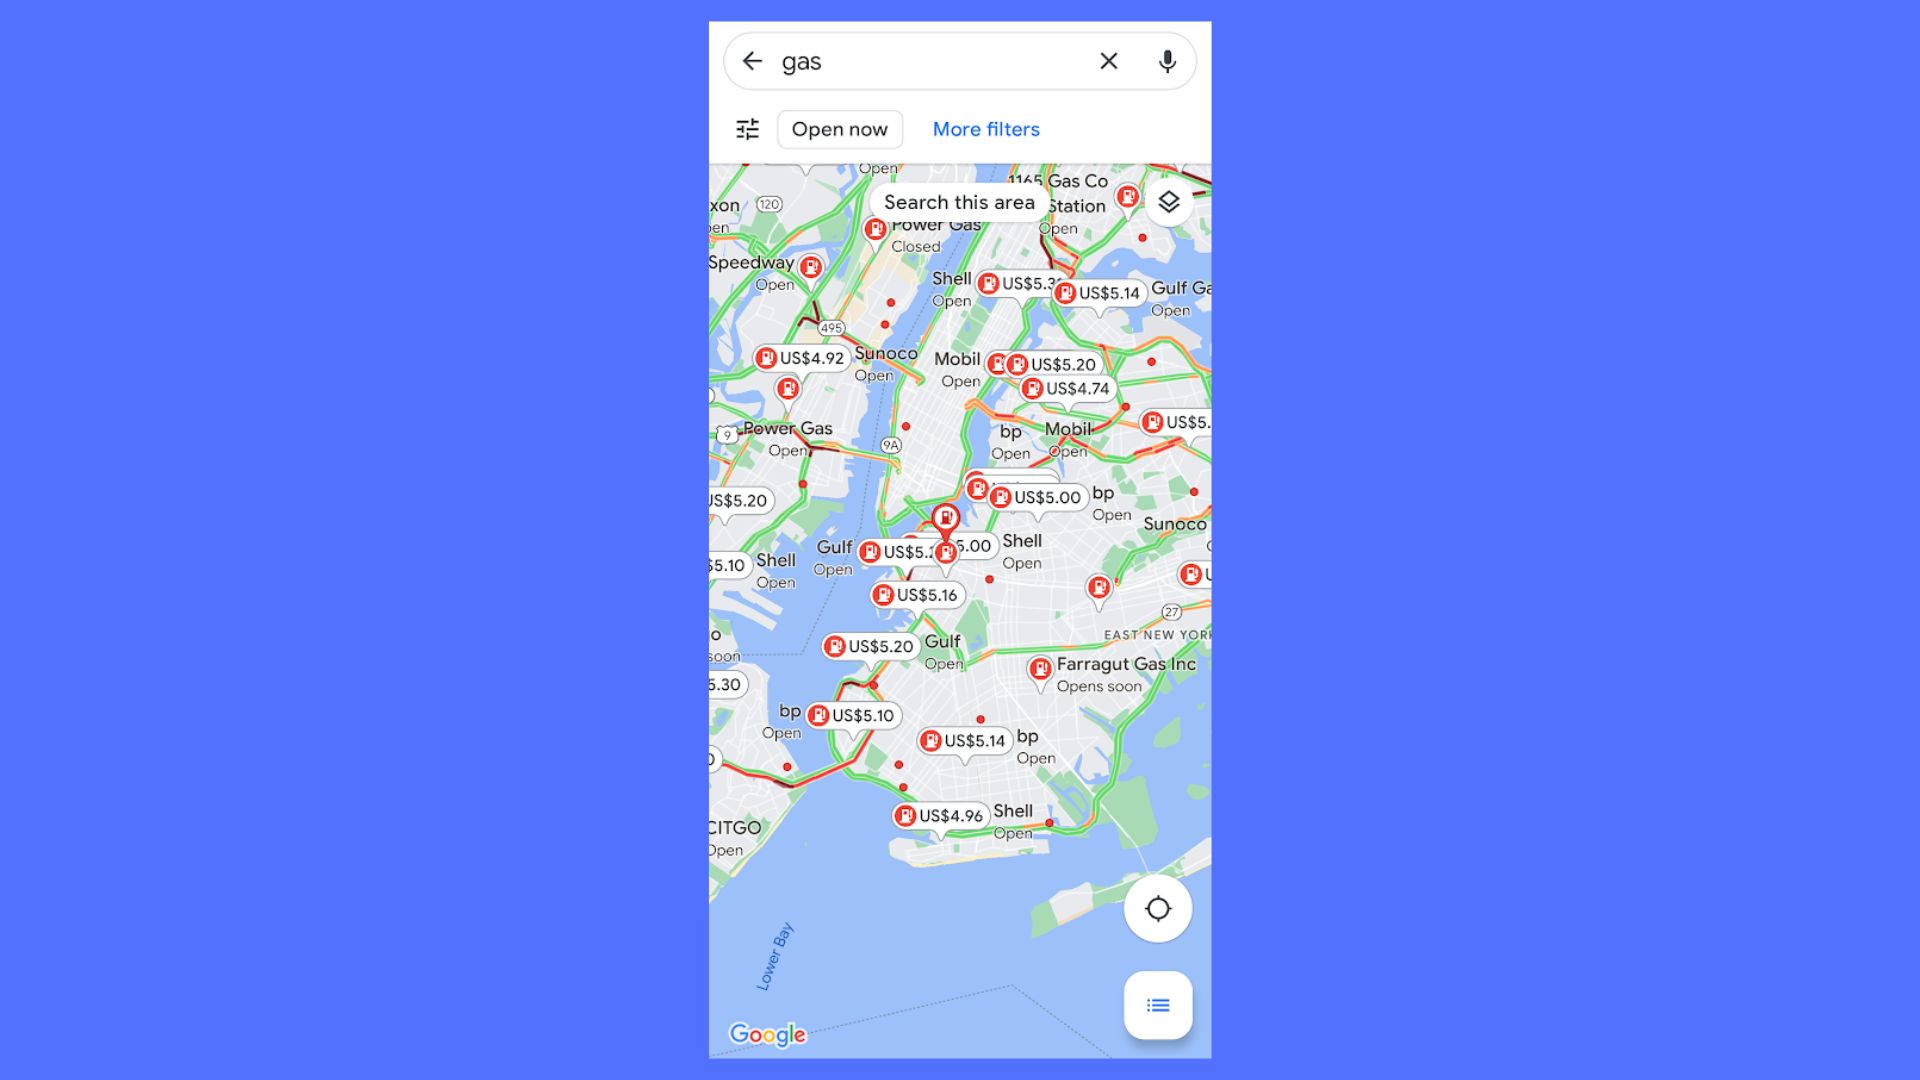  Цены на топливо в Нью-Йорке, как показано на Google Maps